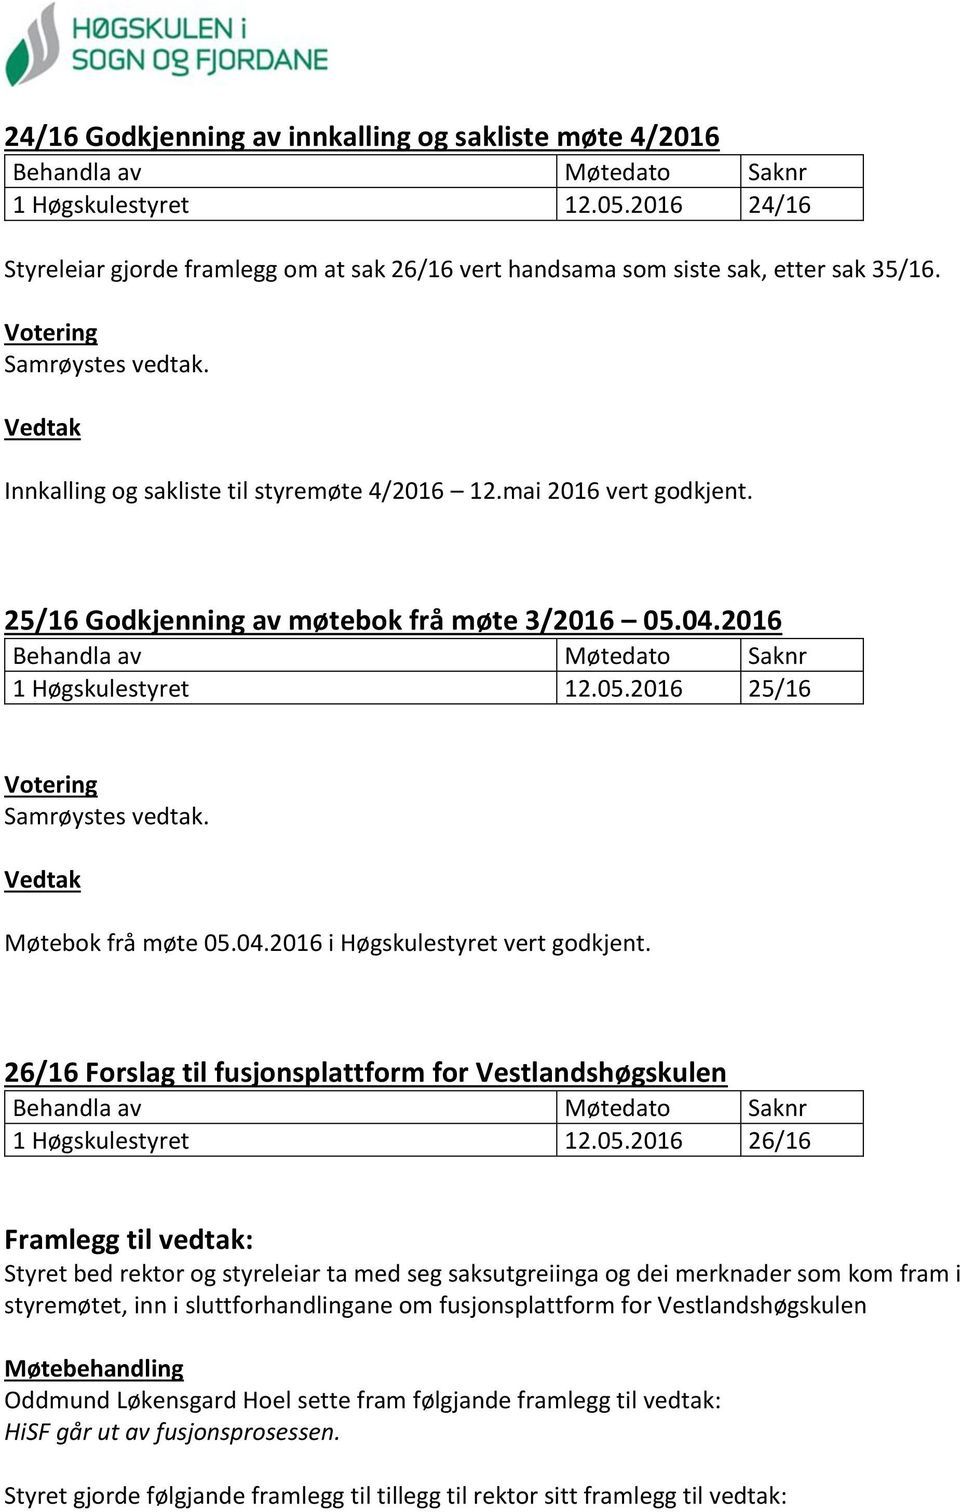 26/16 Forslag til fusjonsplattform for Vestlandshøgskulen 1 Høgskulestyret 12.05.